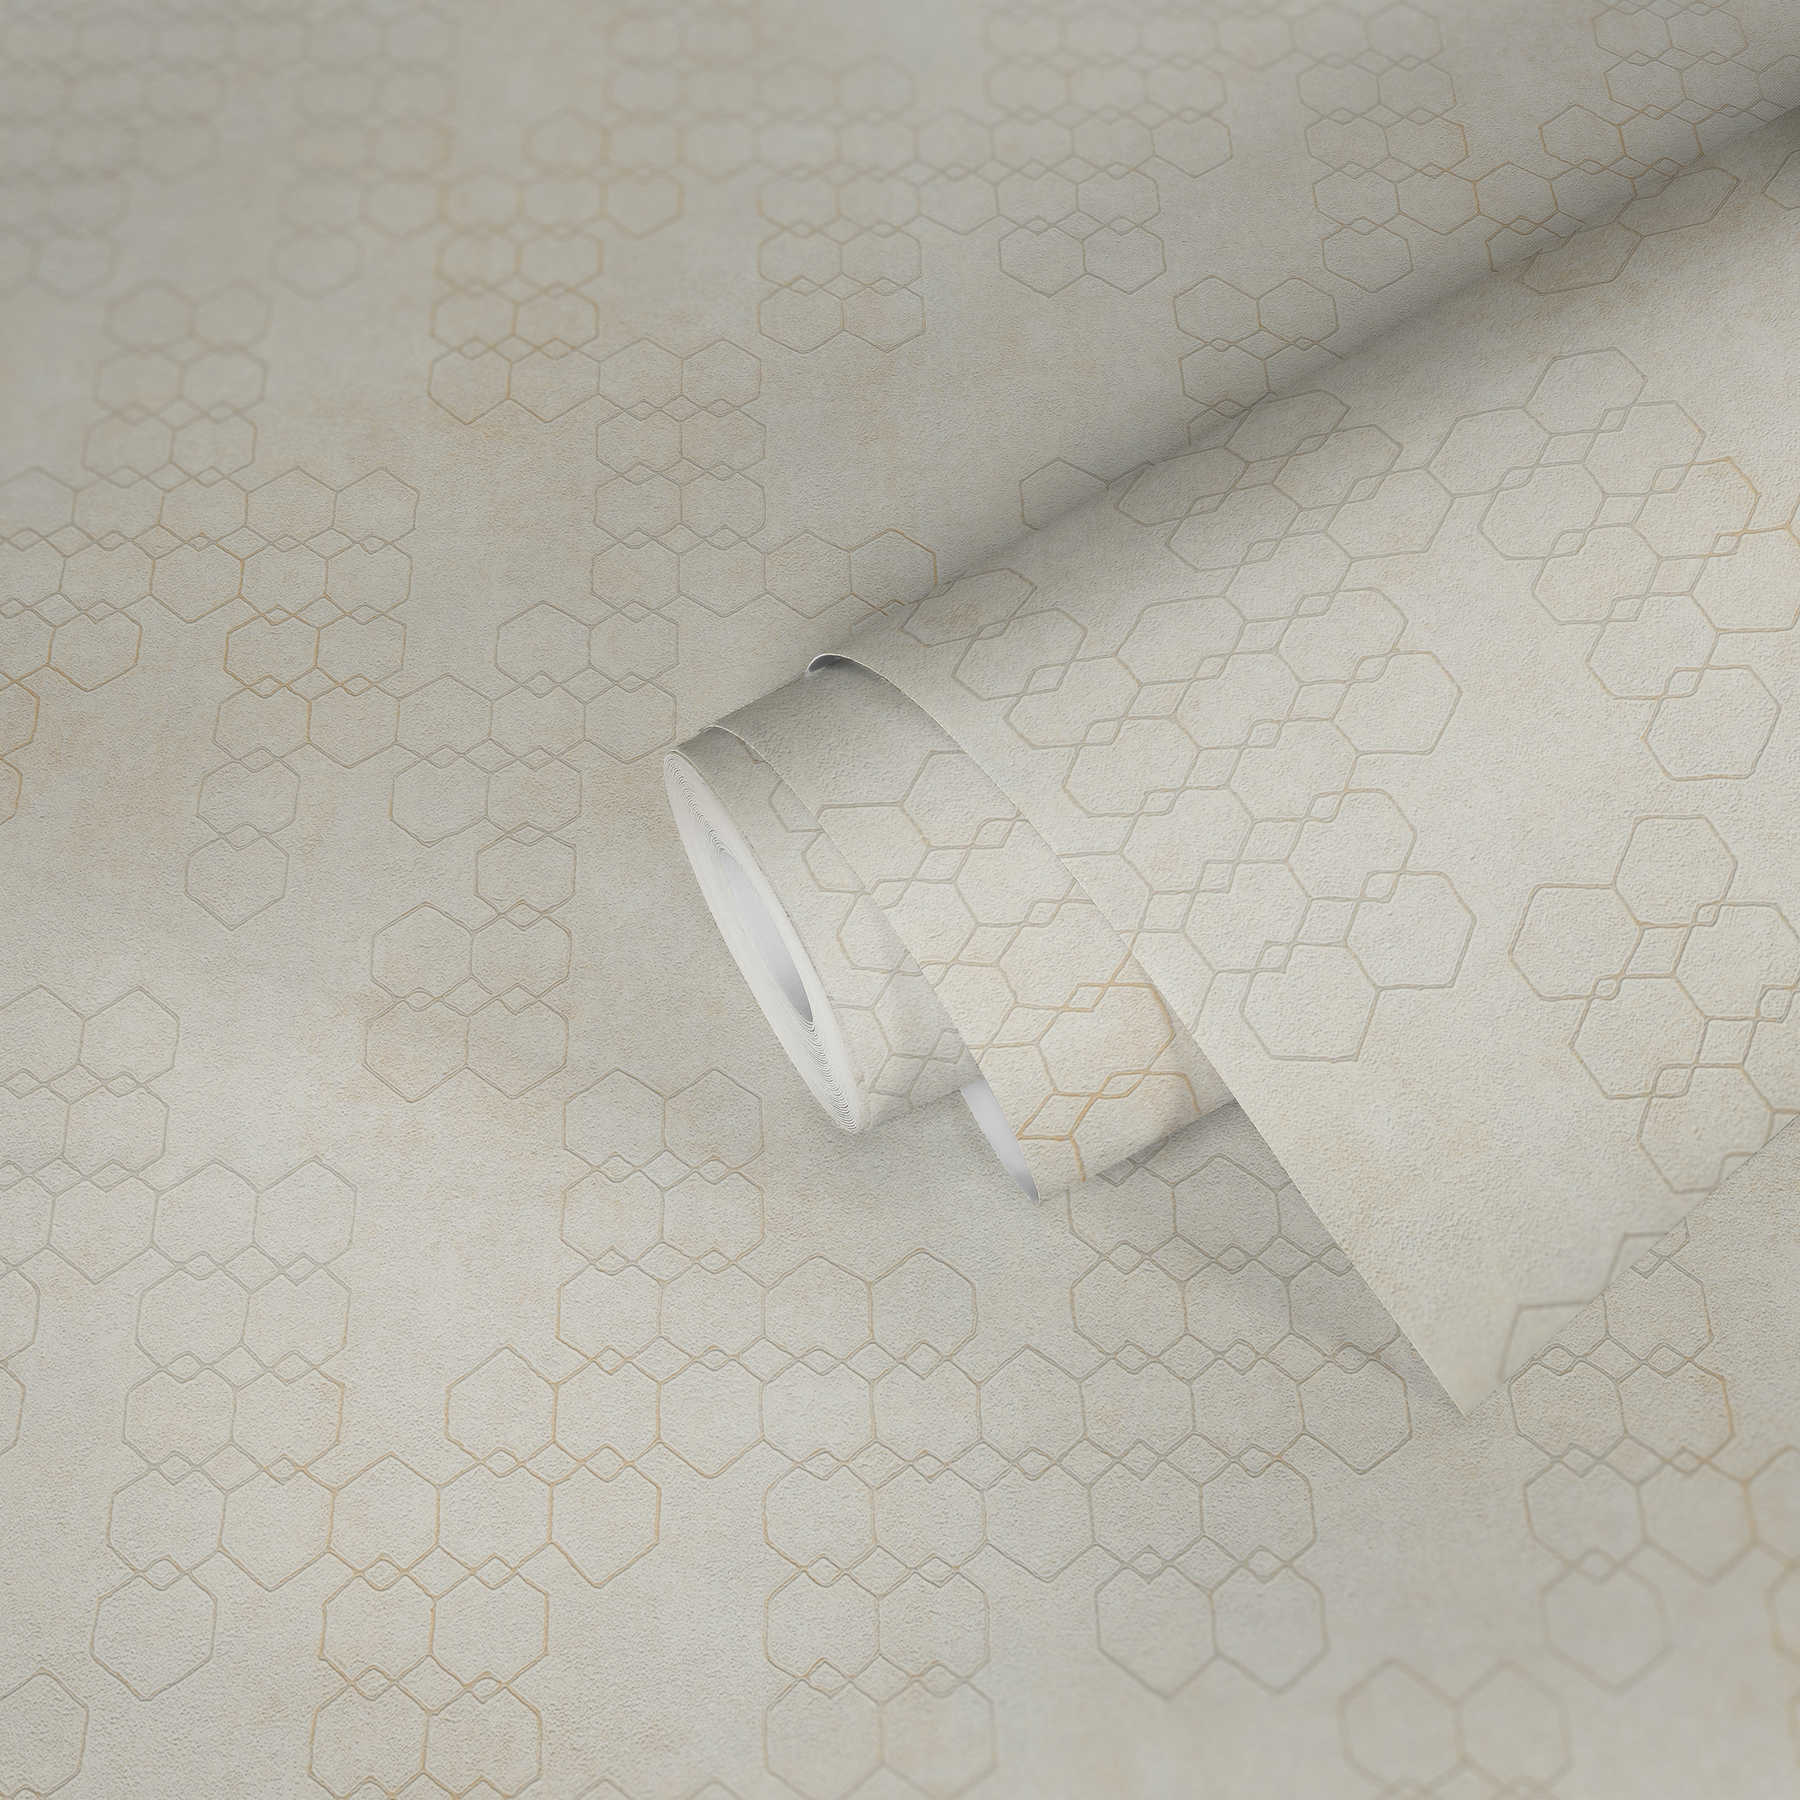             Geometrische Mustertapete im Industrial Style – Creme, Grau, Weiß
        